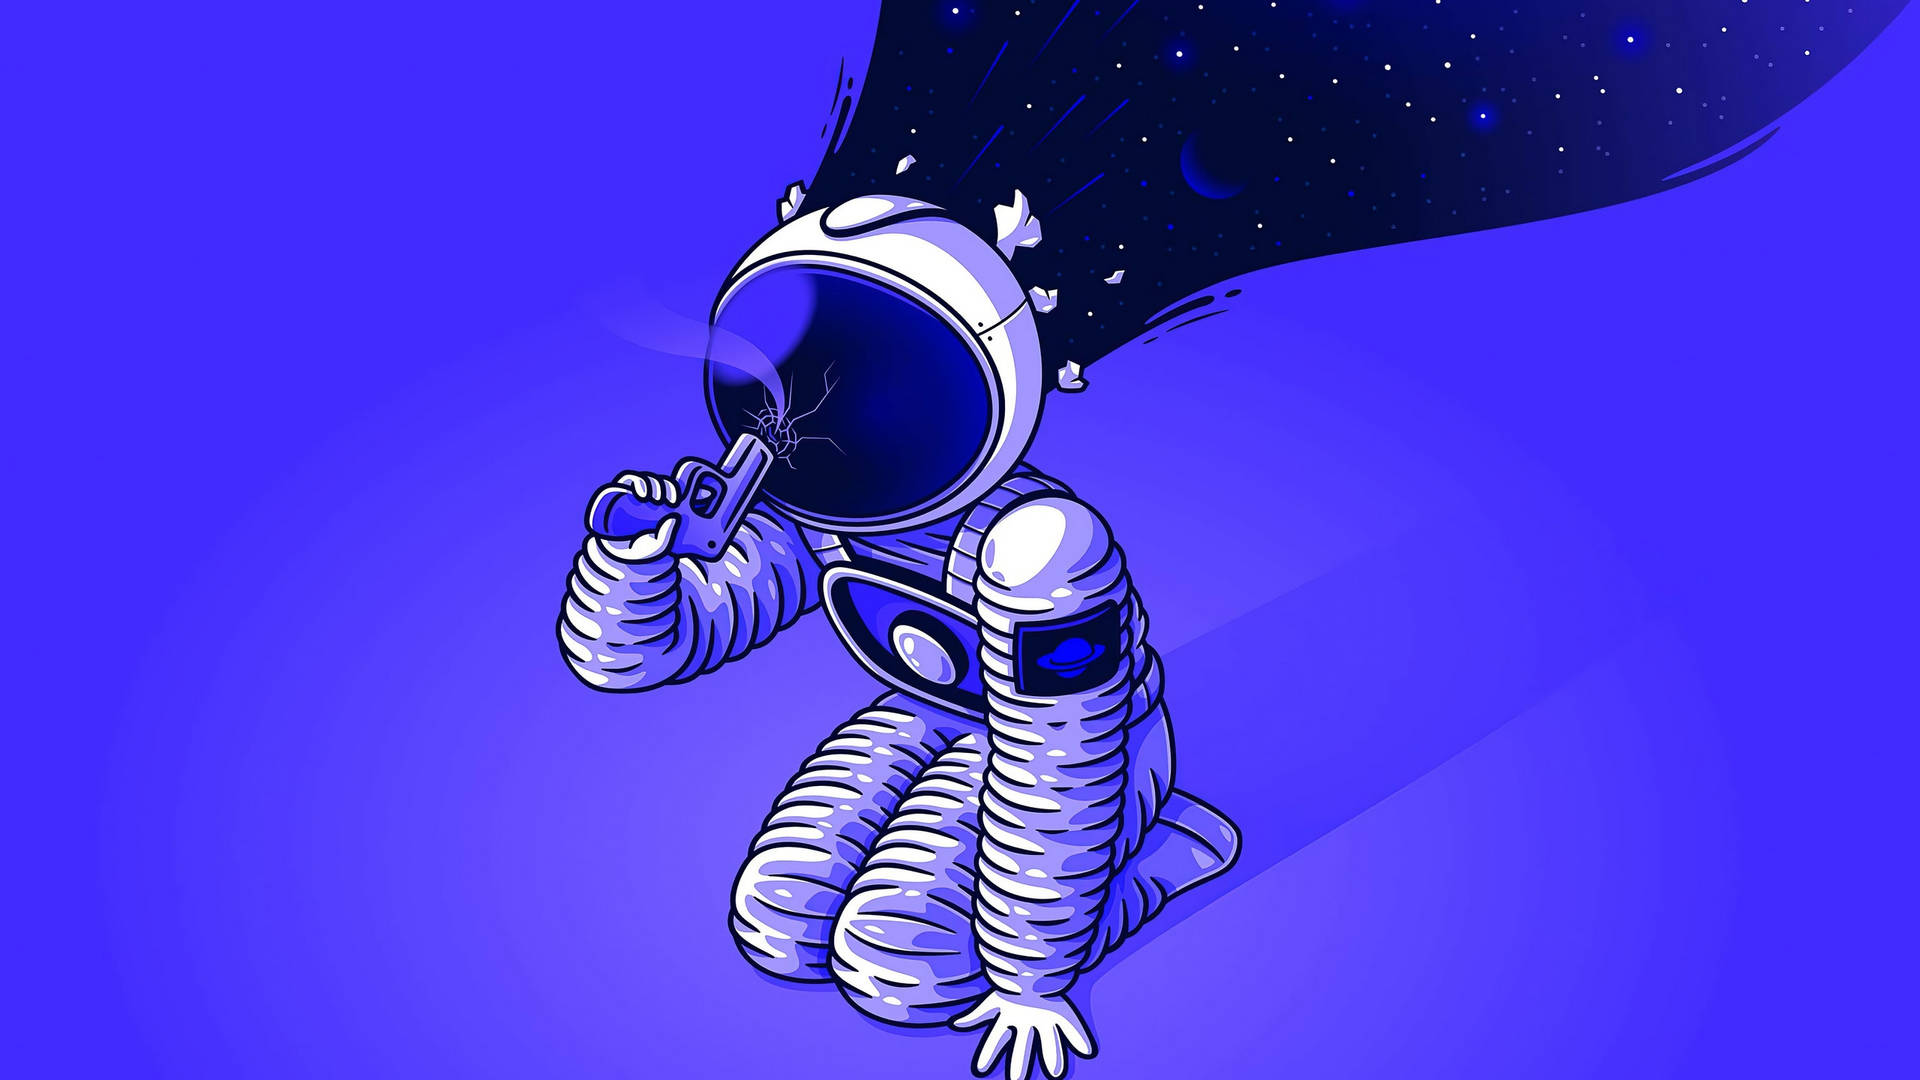 Free Cartoon Astronaut Wallpaper Downloads, [100+] Cartoon Astronaut  Wallpapers for FREE 